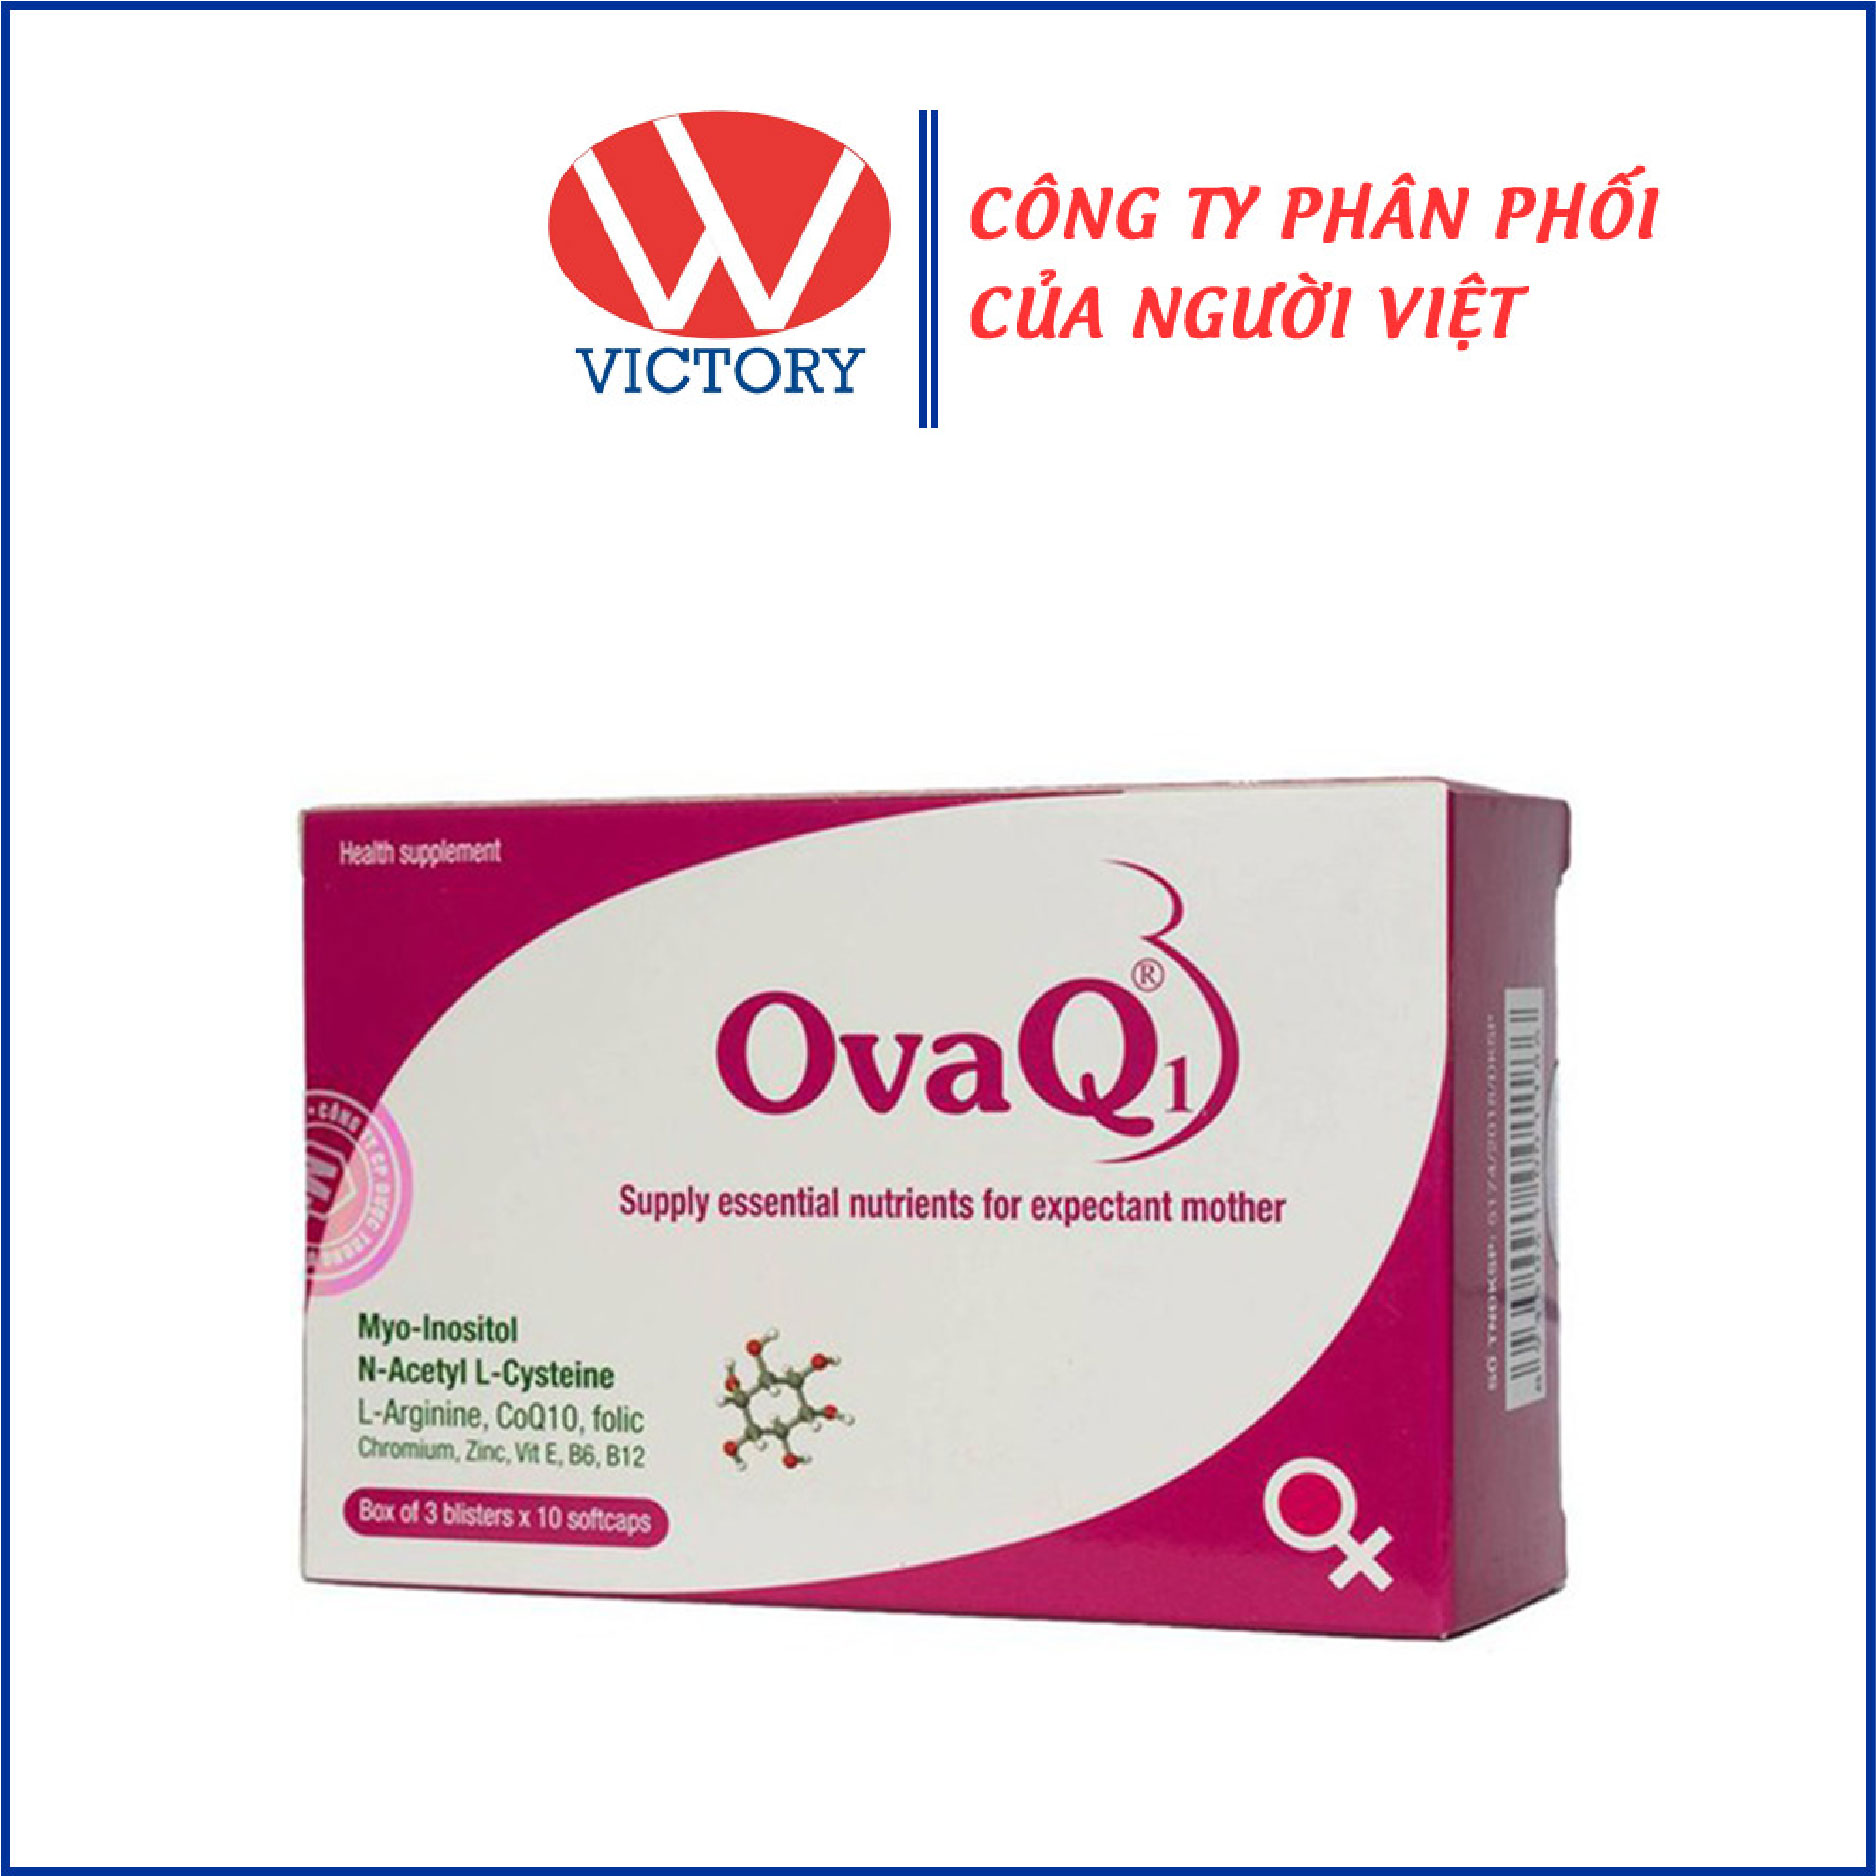 OvaQ1 Bổ sung các dưỡng chất cần thiết để hỗ trợ sinh sản cho nữ giới.